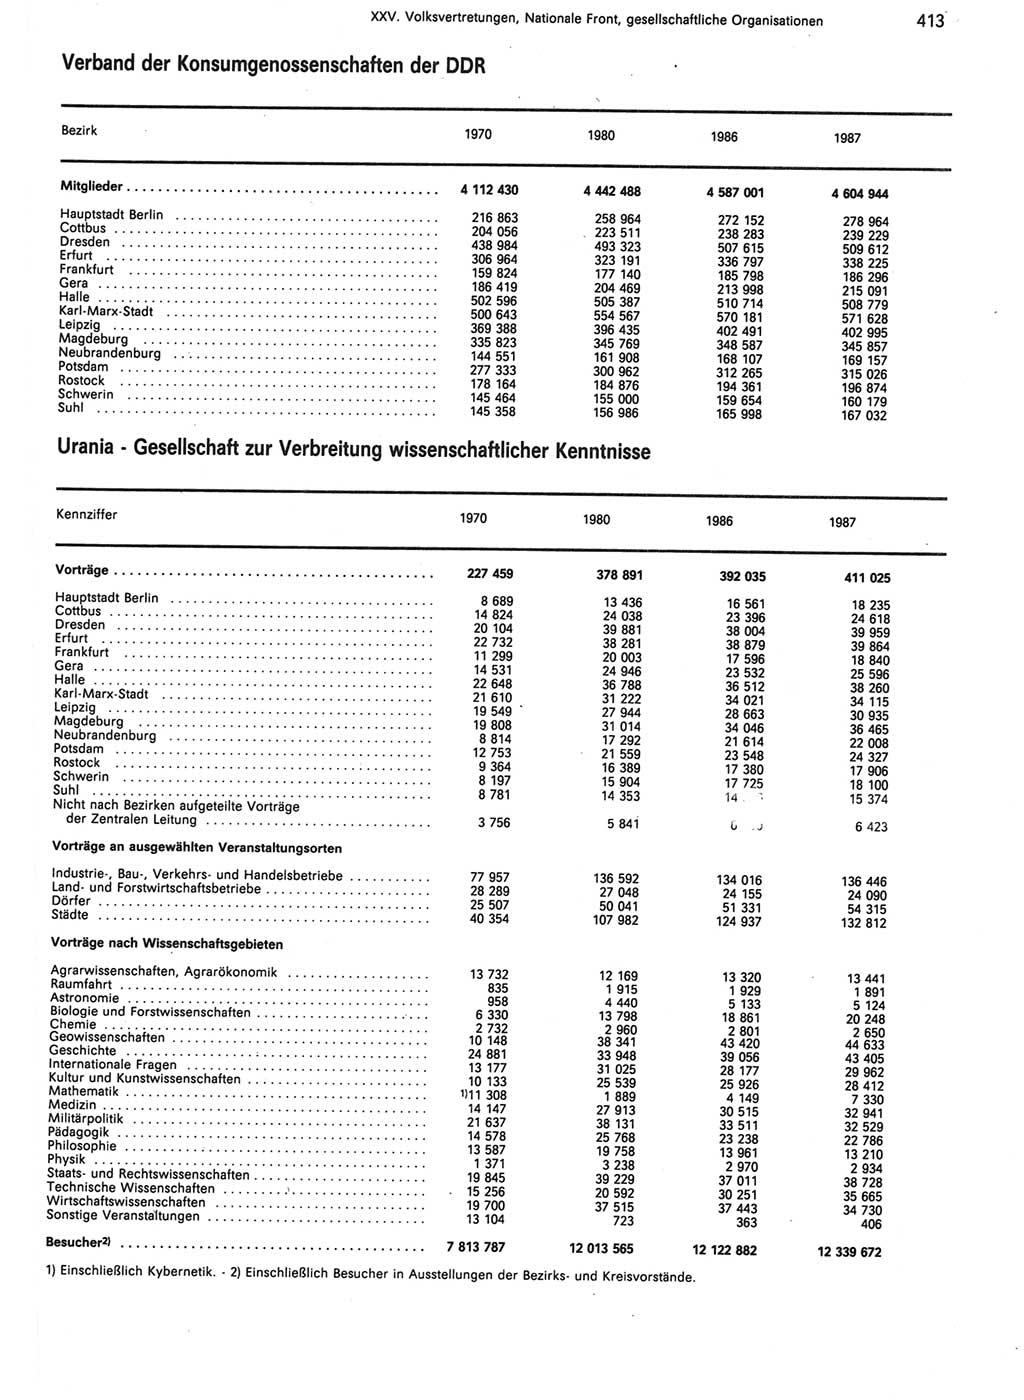 Statistisches Jahrbuch der Deutschen Demokratischen Republik (DDR) 1988, Seite 413 (Stat. Jb. DDR 1988, S. 413)